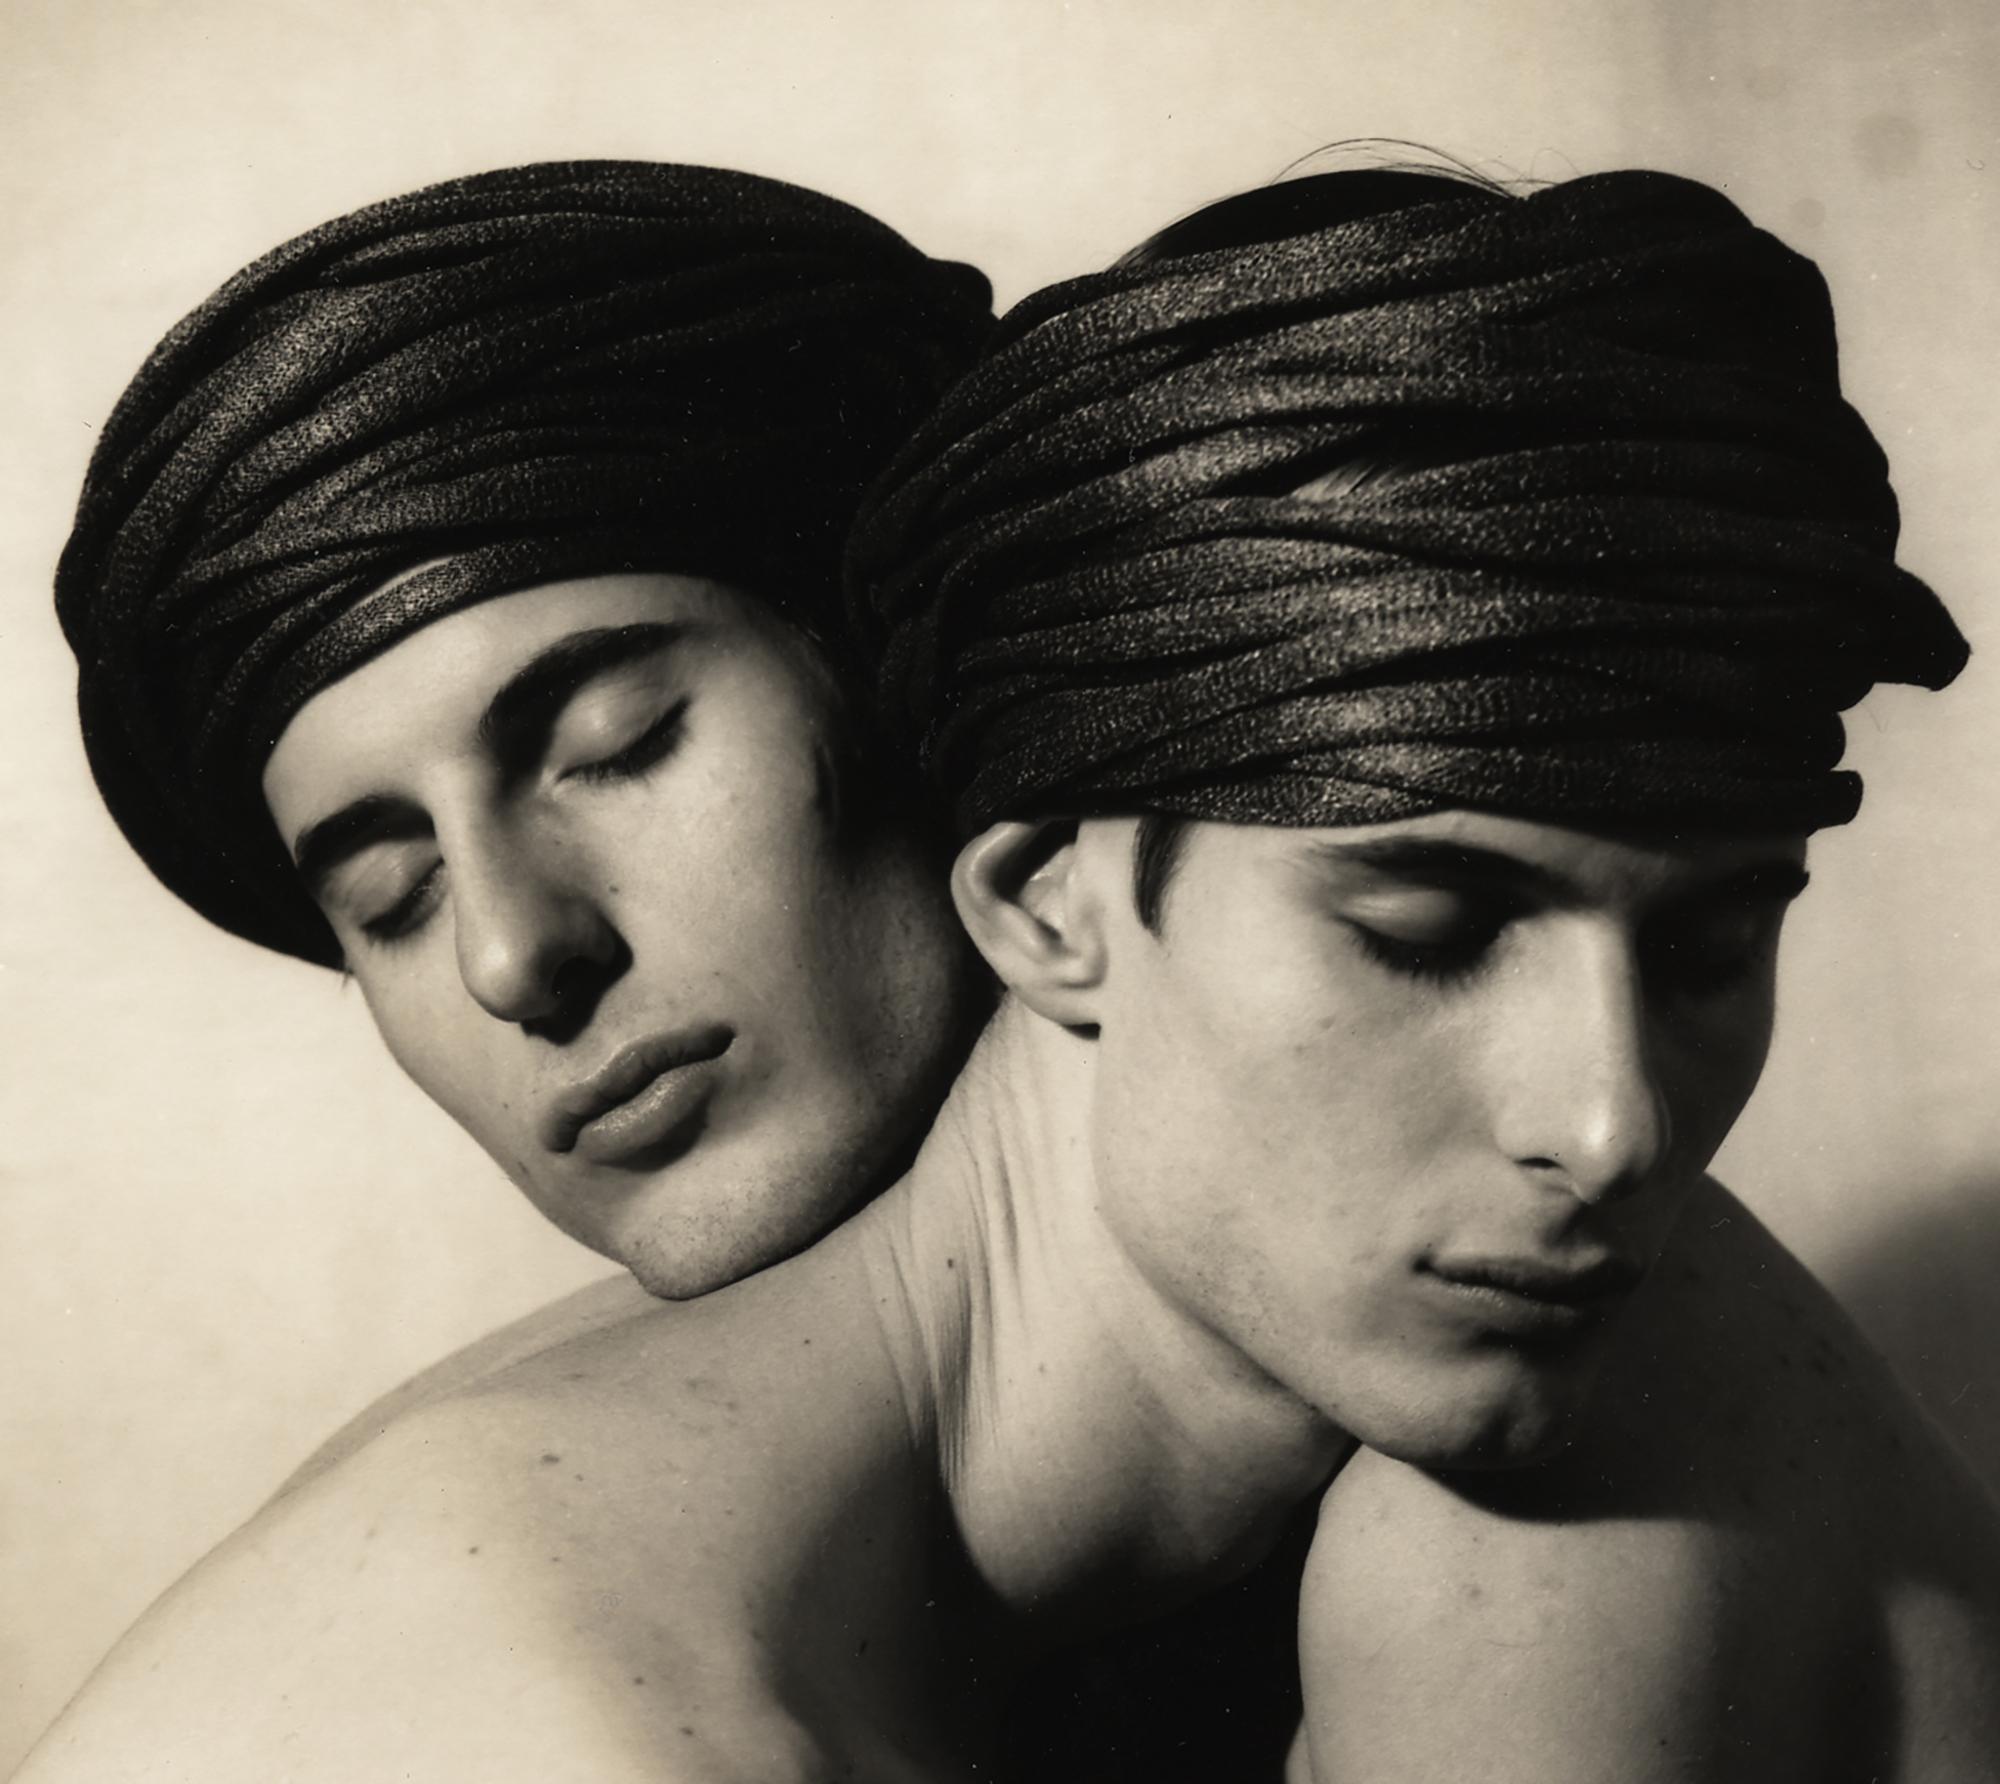 Twins Entwined, 1991: Eineiige Zwillinge, die gemeinsam in einem Studio-Porträt fotografiert wurden. (Beige), Black and White Photograph, von Ron Baxter Smith